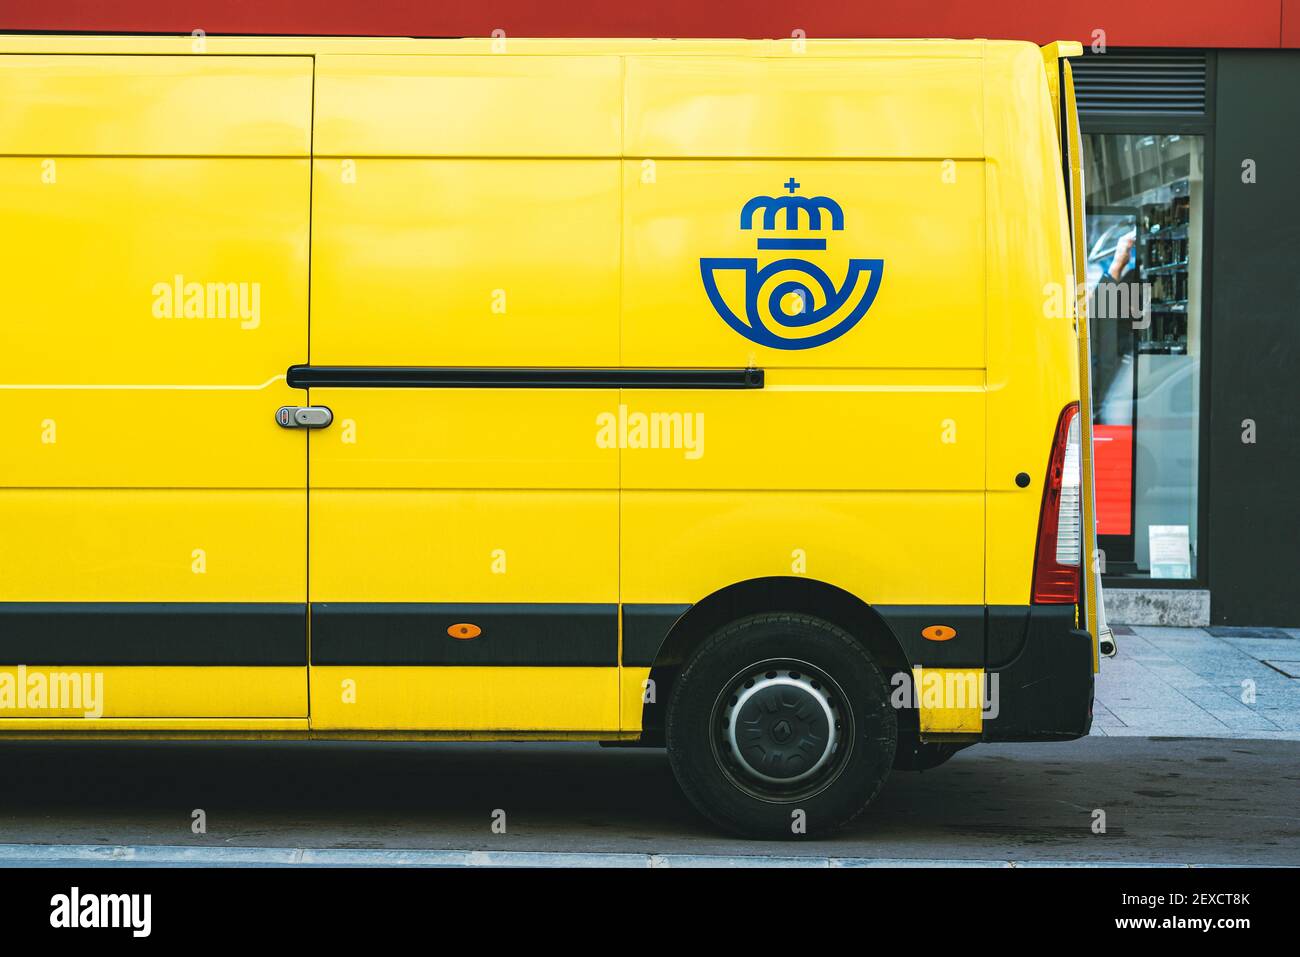 Minibus de livraison jaune de Correos, la compagnie postale espagnole de courrier livrant Dans une rue publique.Service postal public en Espagne Banque D'Images